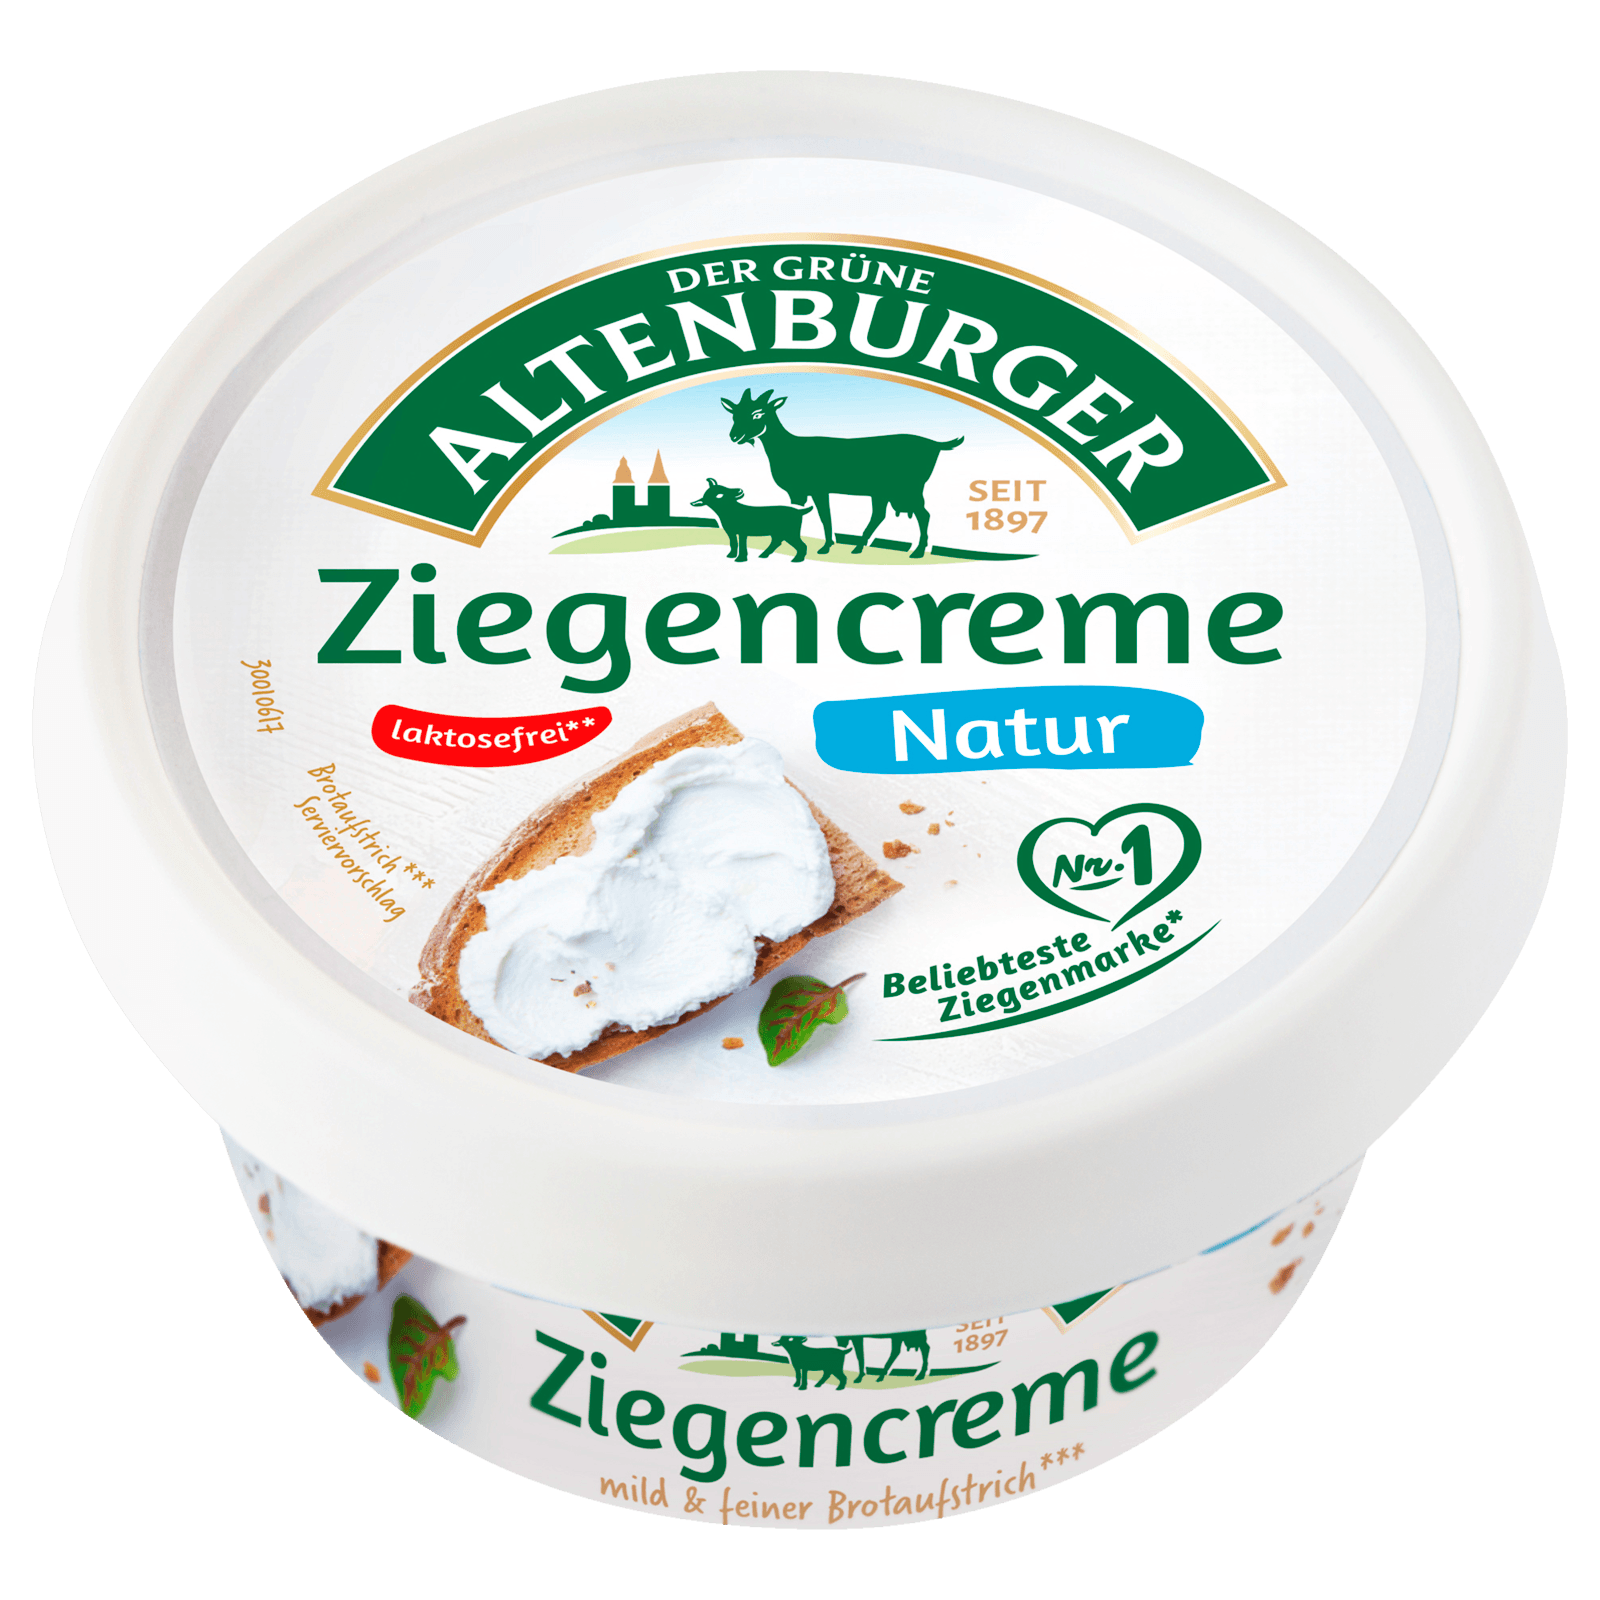 Der Grüne Altenburger Ziegenrahm Frischkäse 150g  für 2.99 EUR